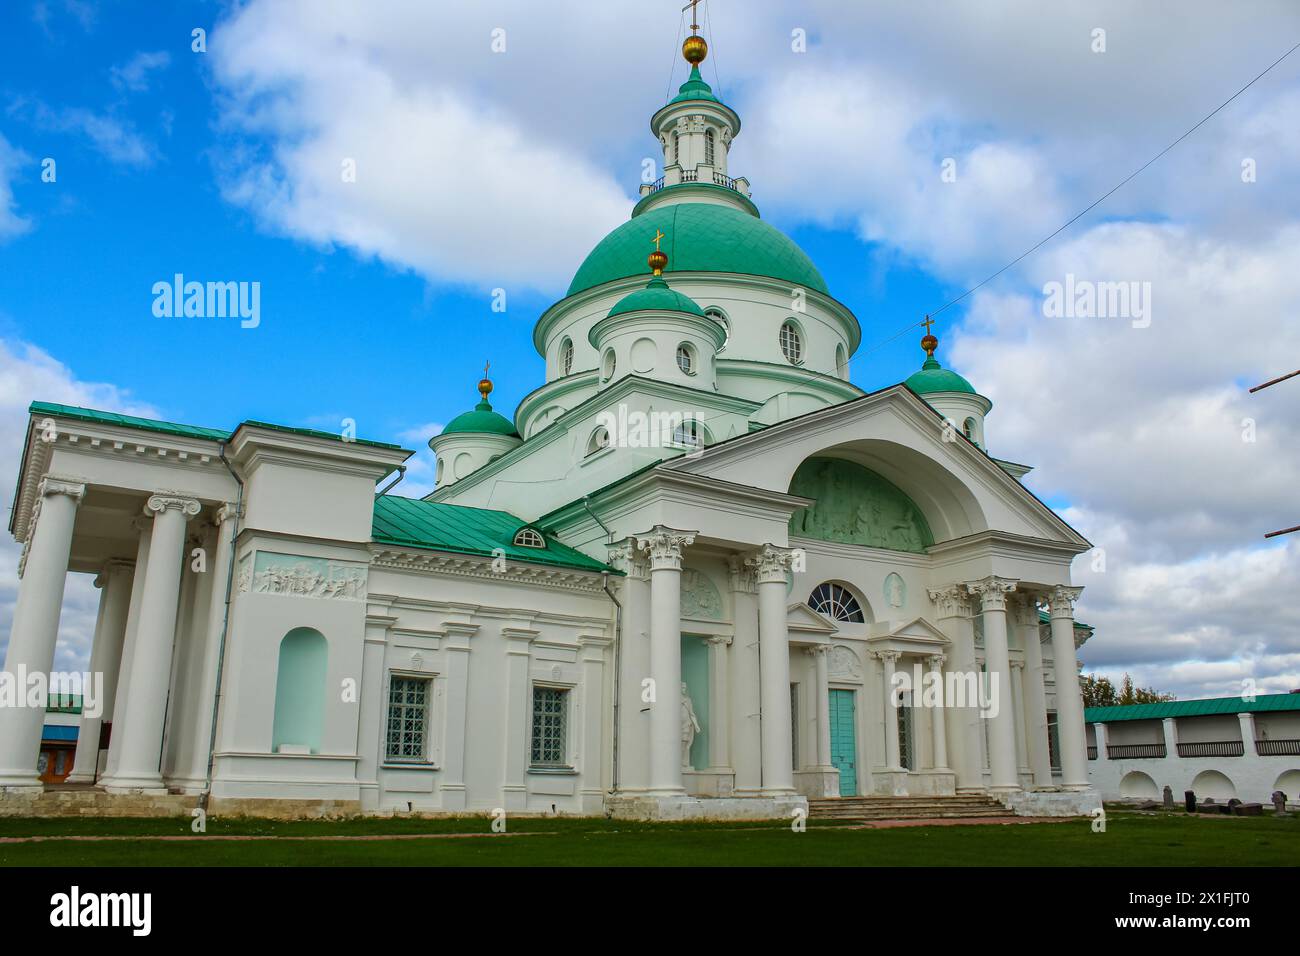 Rostov Veliky. Spaso-Yakovlevsky monastery. Cathedral in honor of St. Demetrius of Rostov. Russia Stock Photo